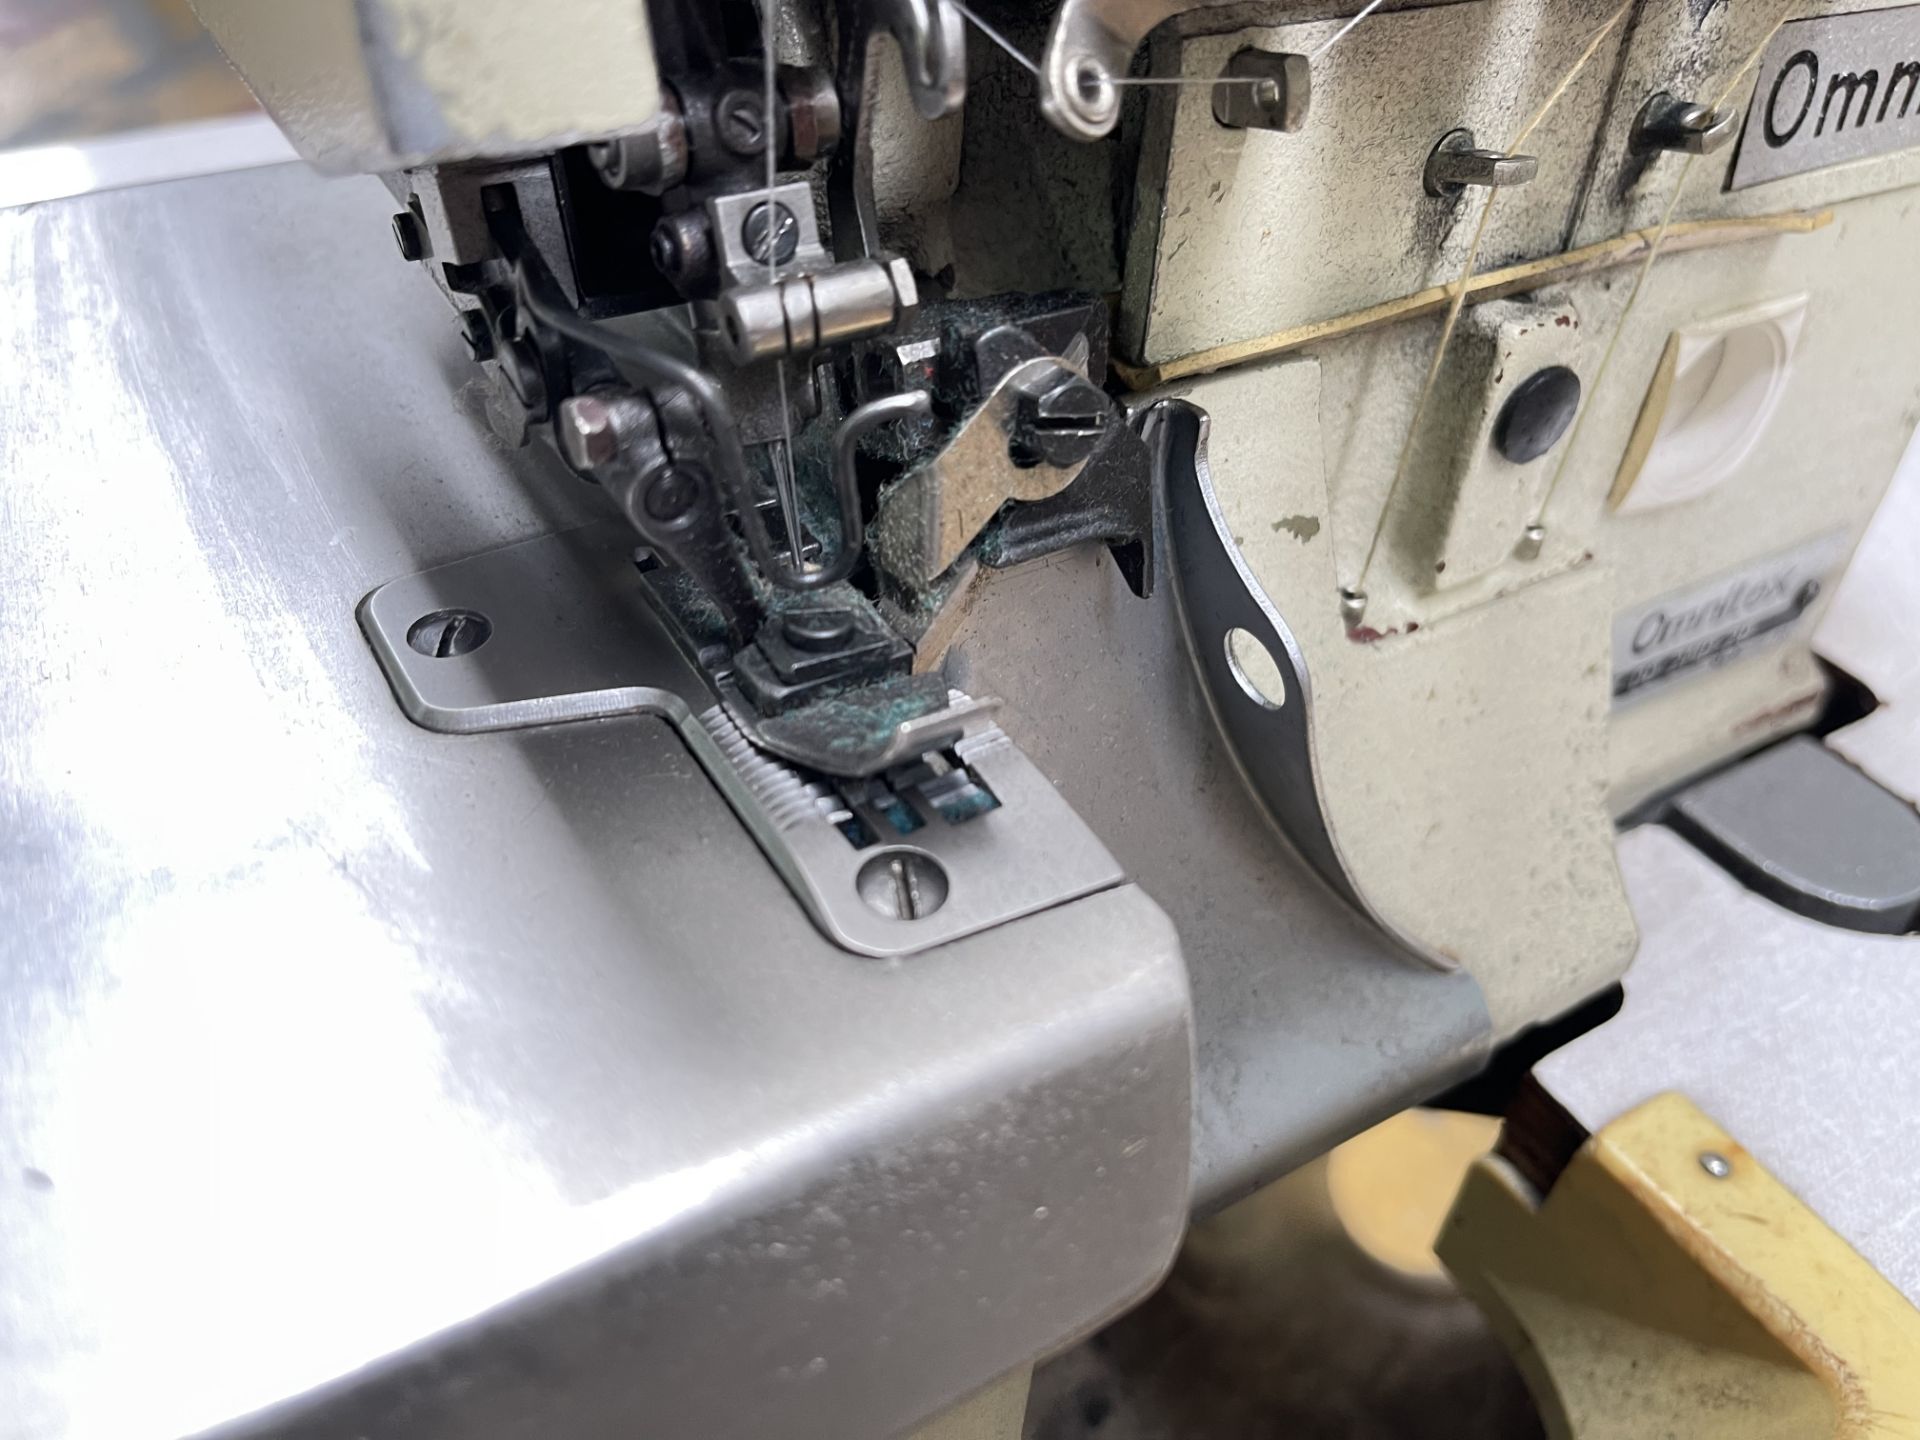 Omnitex C07-00-2ND-20 Overlocker Sewing Machine S/No: 017799 - Image 6 of 8